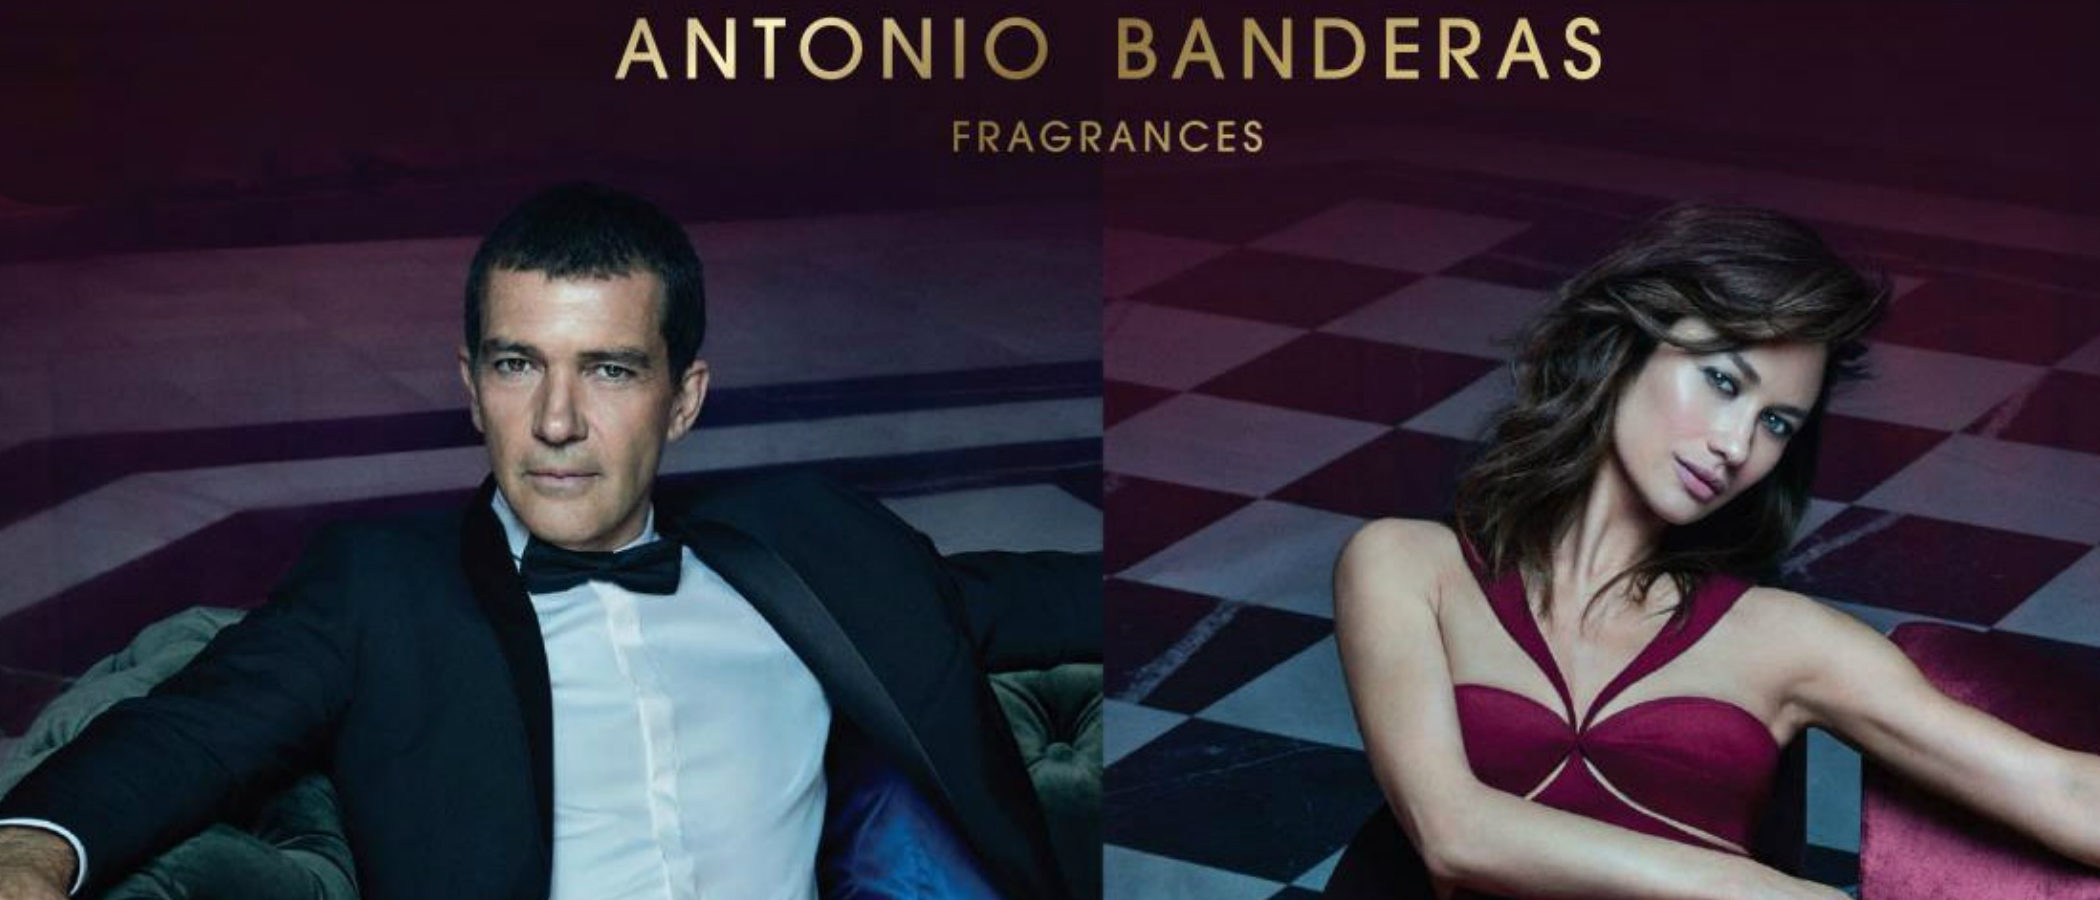 Antonio Banderas sorprende con dos nuevos perfumes: 'The Secret Temptation' y 'Her Secret Temptation'